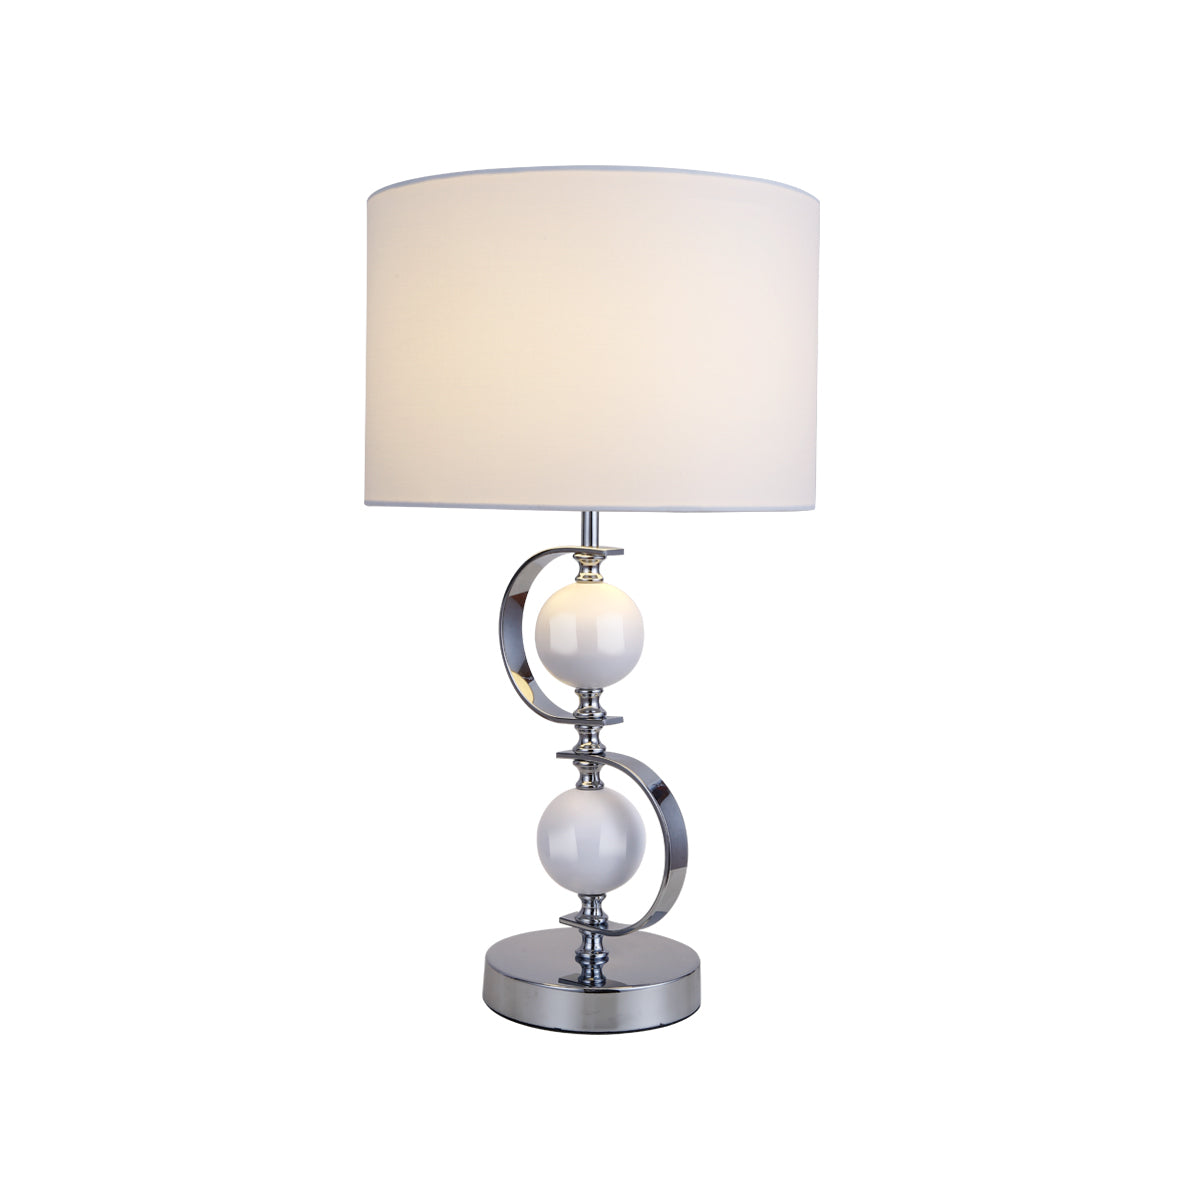 Rialto White Modern Elegant Table Lamp